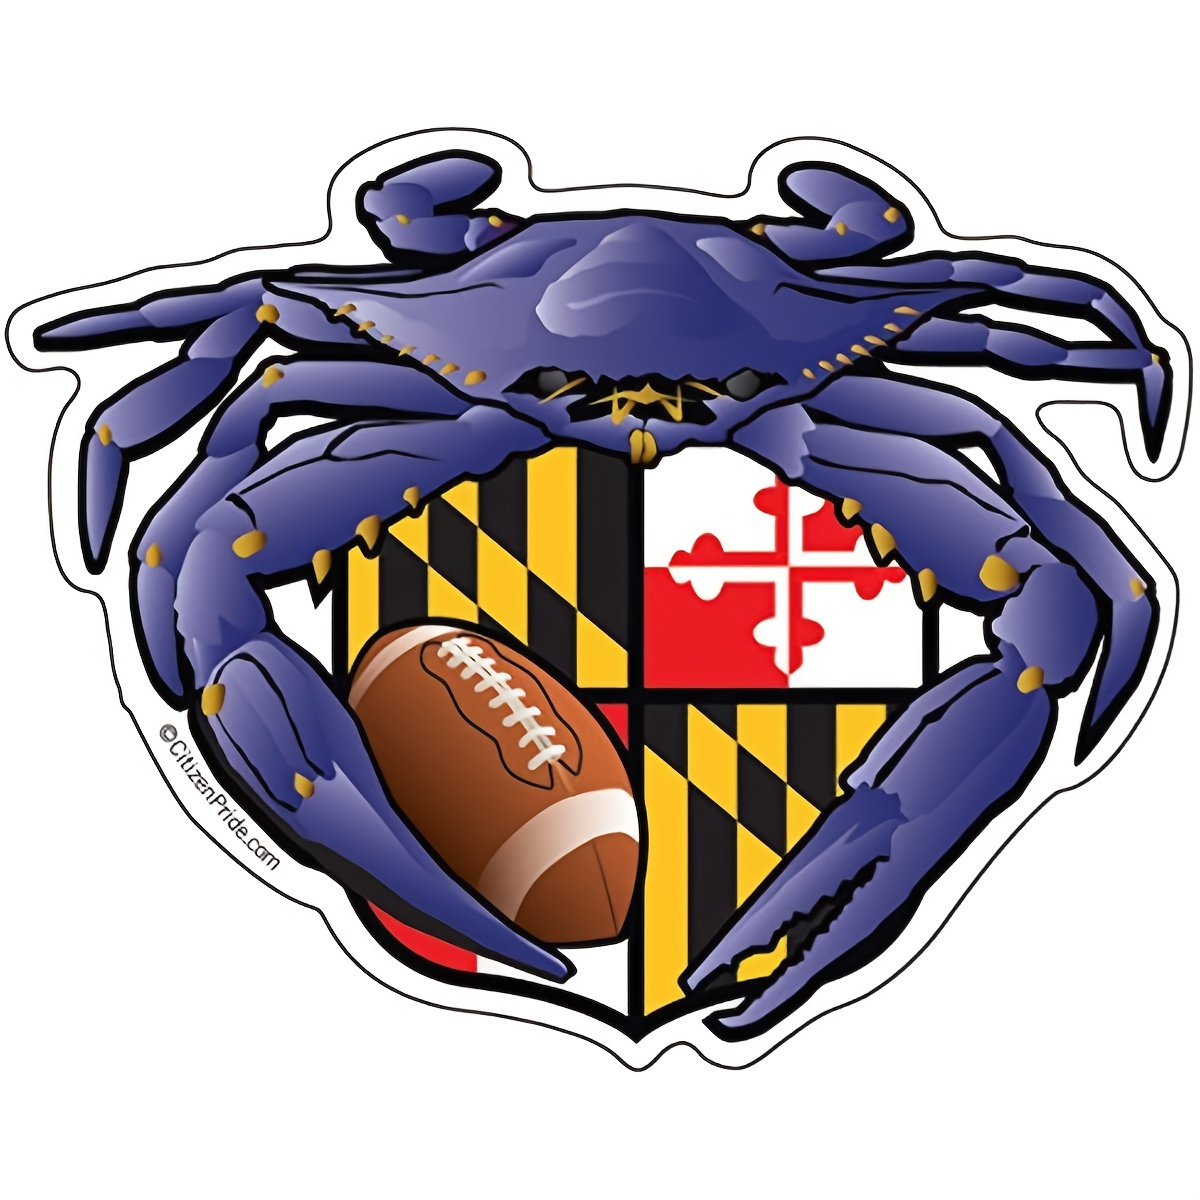 South Carolina Crab Sticker